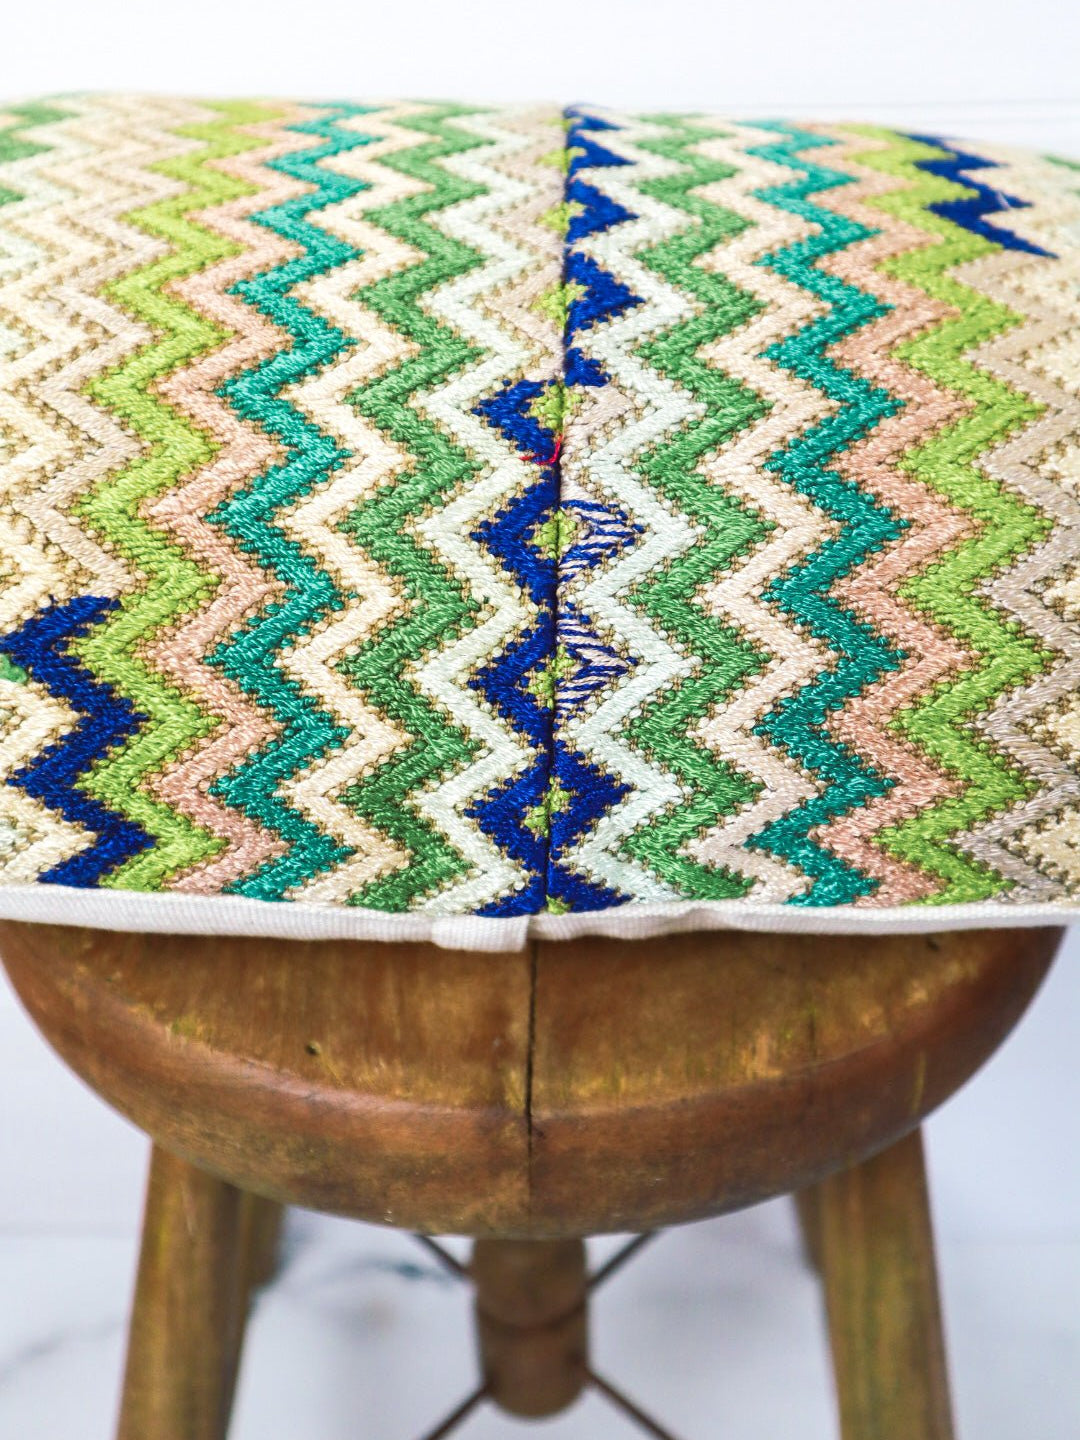 Lumbar Textile Cushion Cover - Tesoros Maya